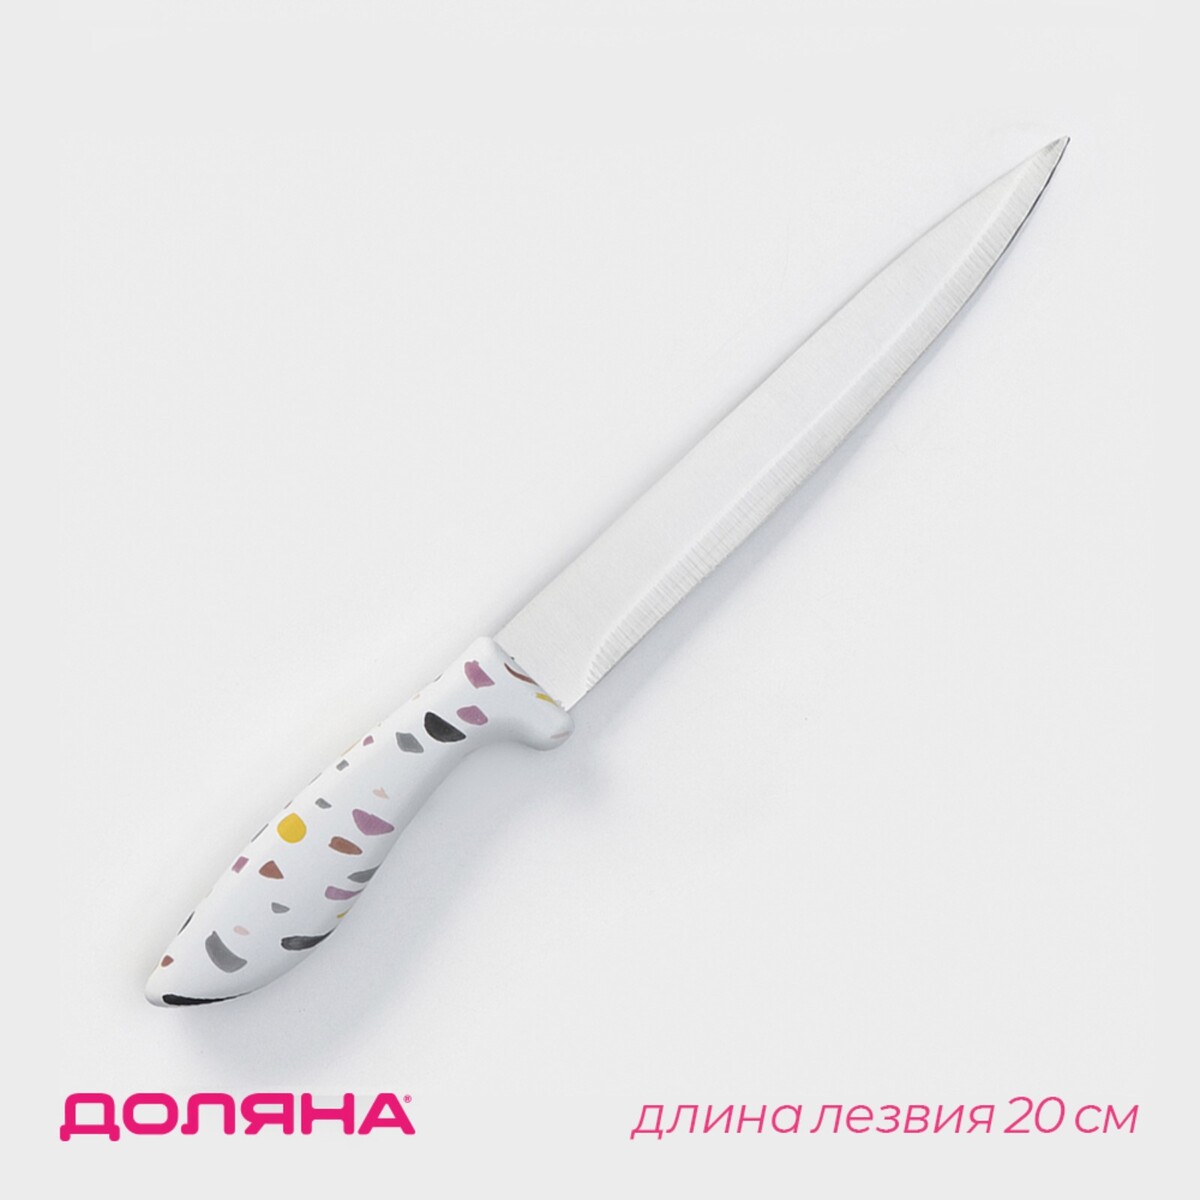 Нож разделочный доляна sparkle, лезвие 20 см, цвет белый нож топорик кухонный доляна sparkle лезвие 20 см белый